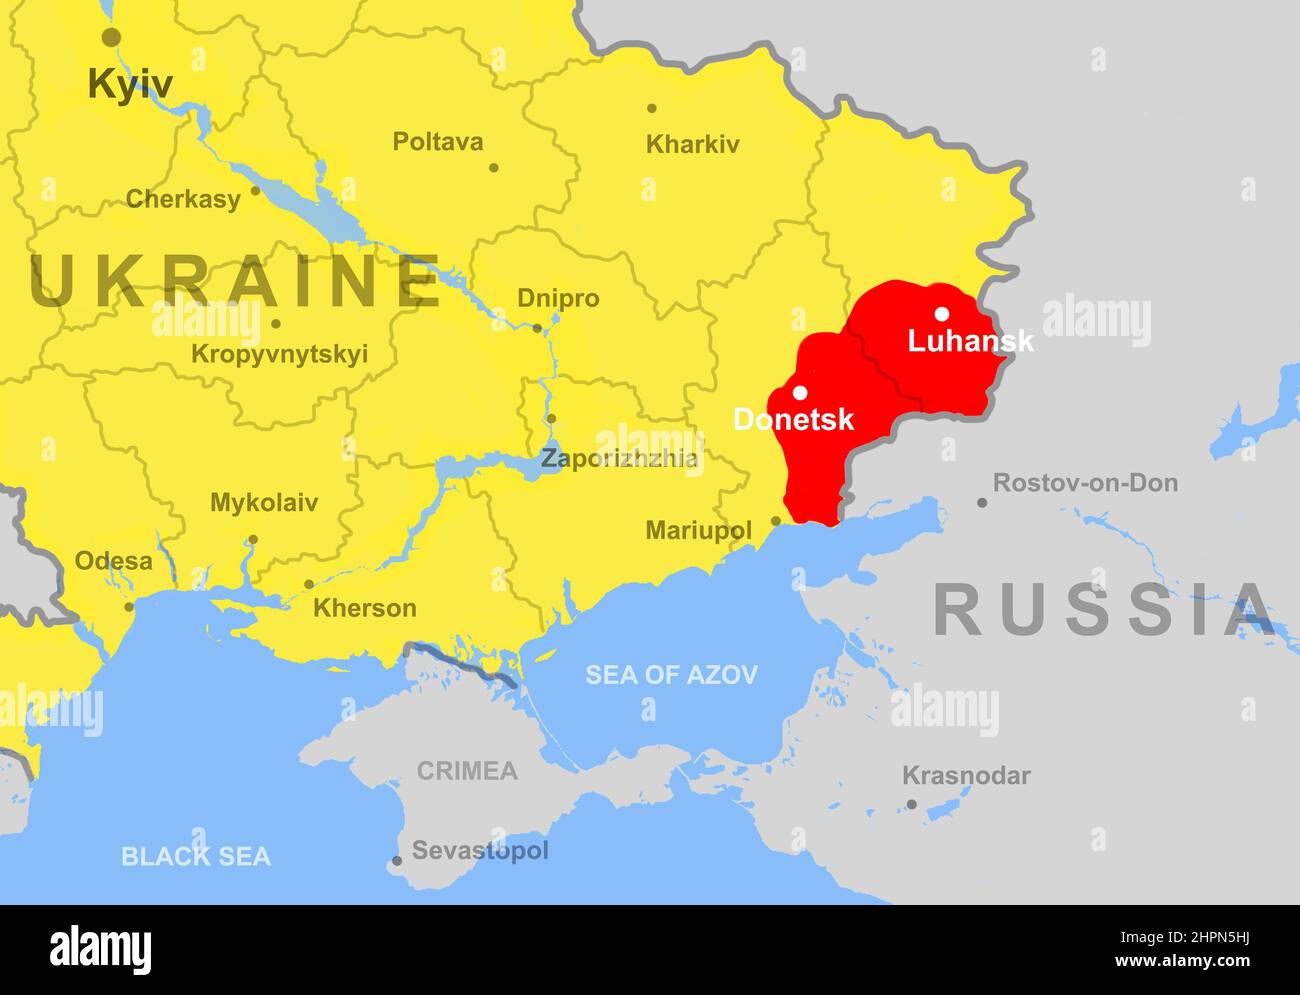 Ucraina sulla carta europea, Donetsk e Luhansk regioni (Donbass). Mappa politica con confine con la Russia, Crimea, Mar Nero e Azov. Concetto di Ukrain Foto Stock